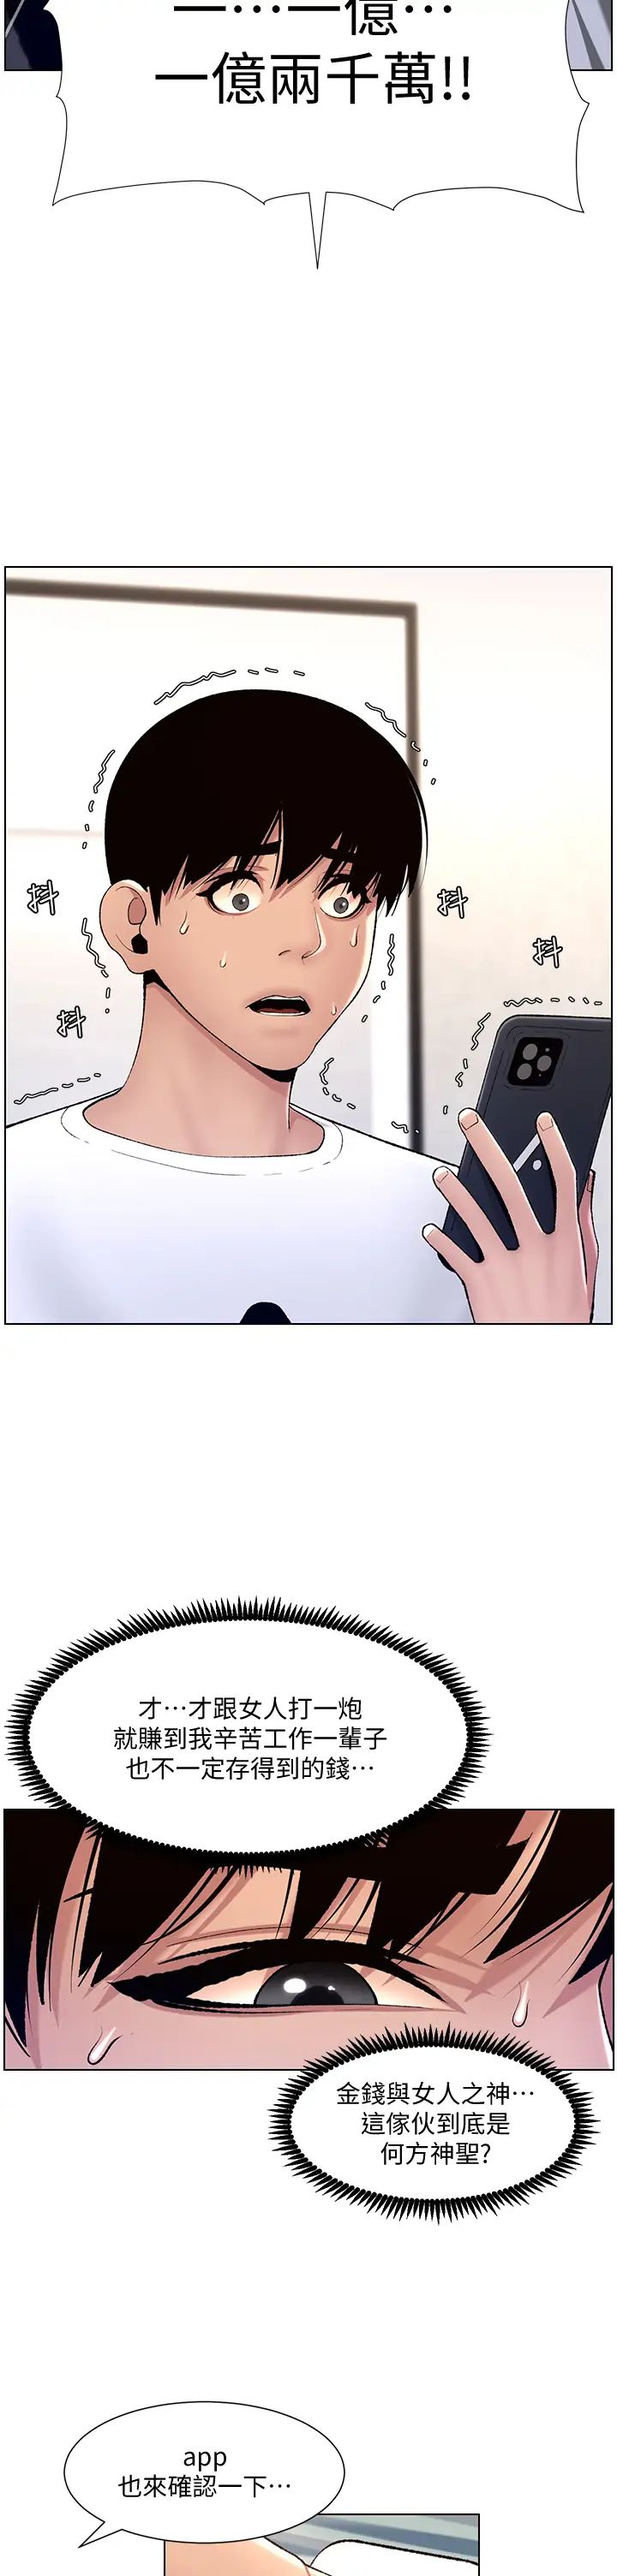 韩国污漫画 帝王App 第12话 要一起来流点汗吗？ 20